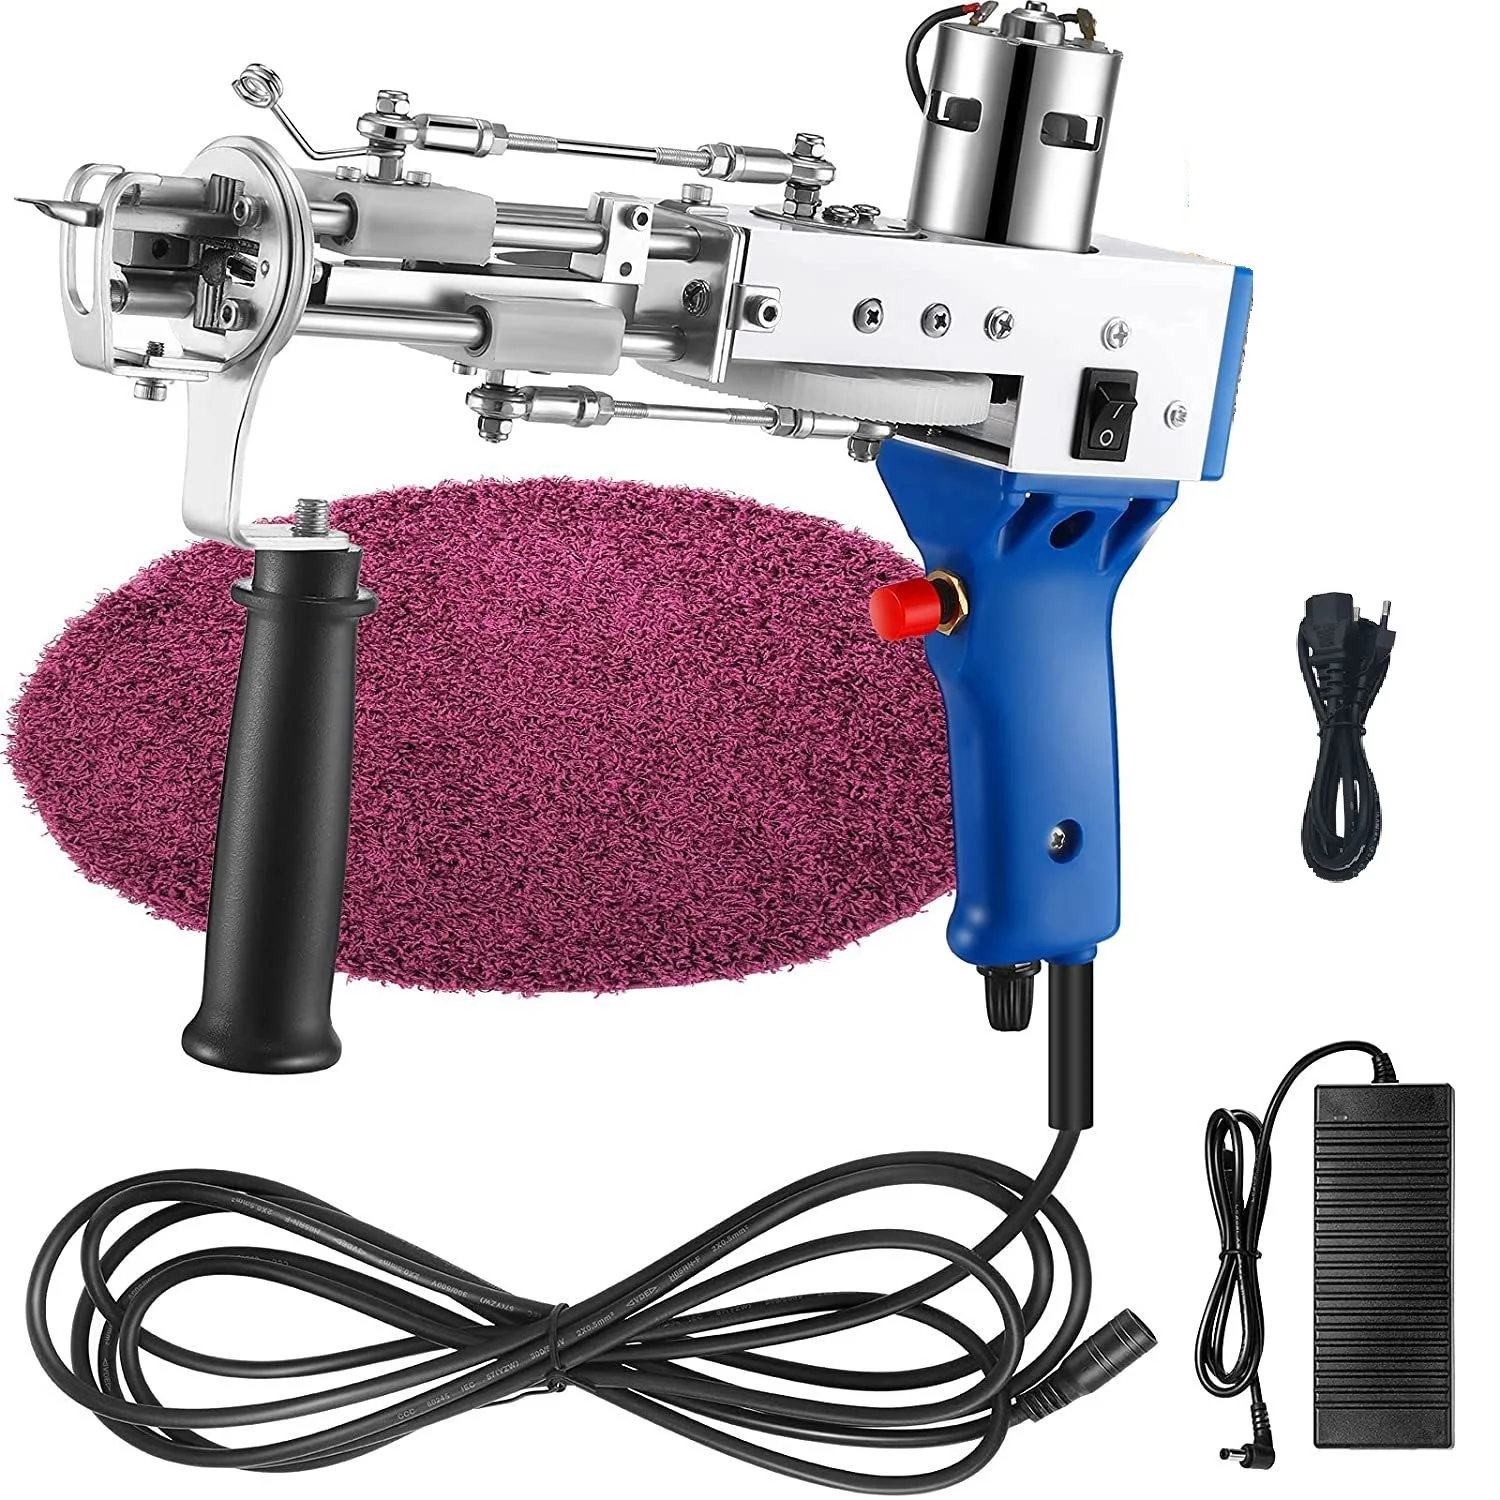 חשמלי שטיח Tufting האקדח שטיח Tufting מכונות אריגת שטיחים נוהרים מכונות שדרוג 2 ב 1 Tufting האקדח